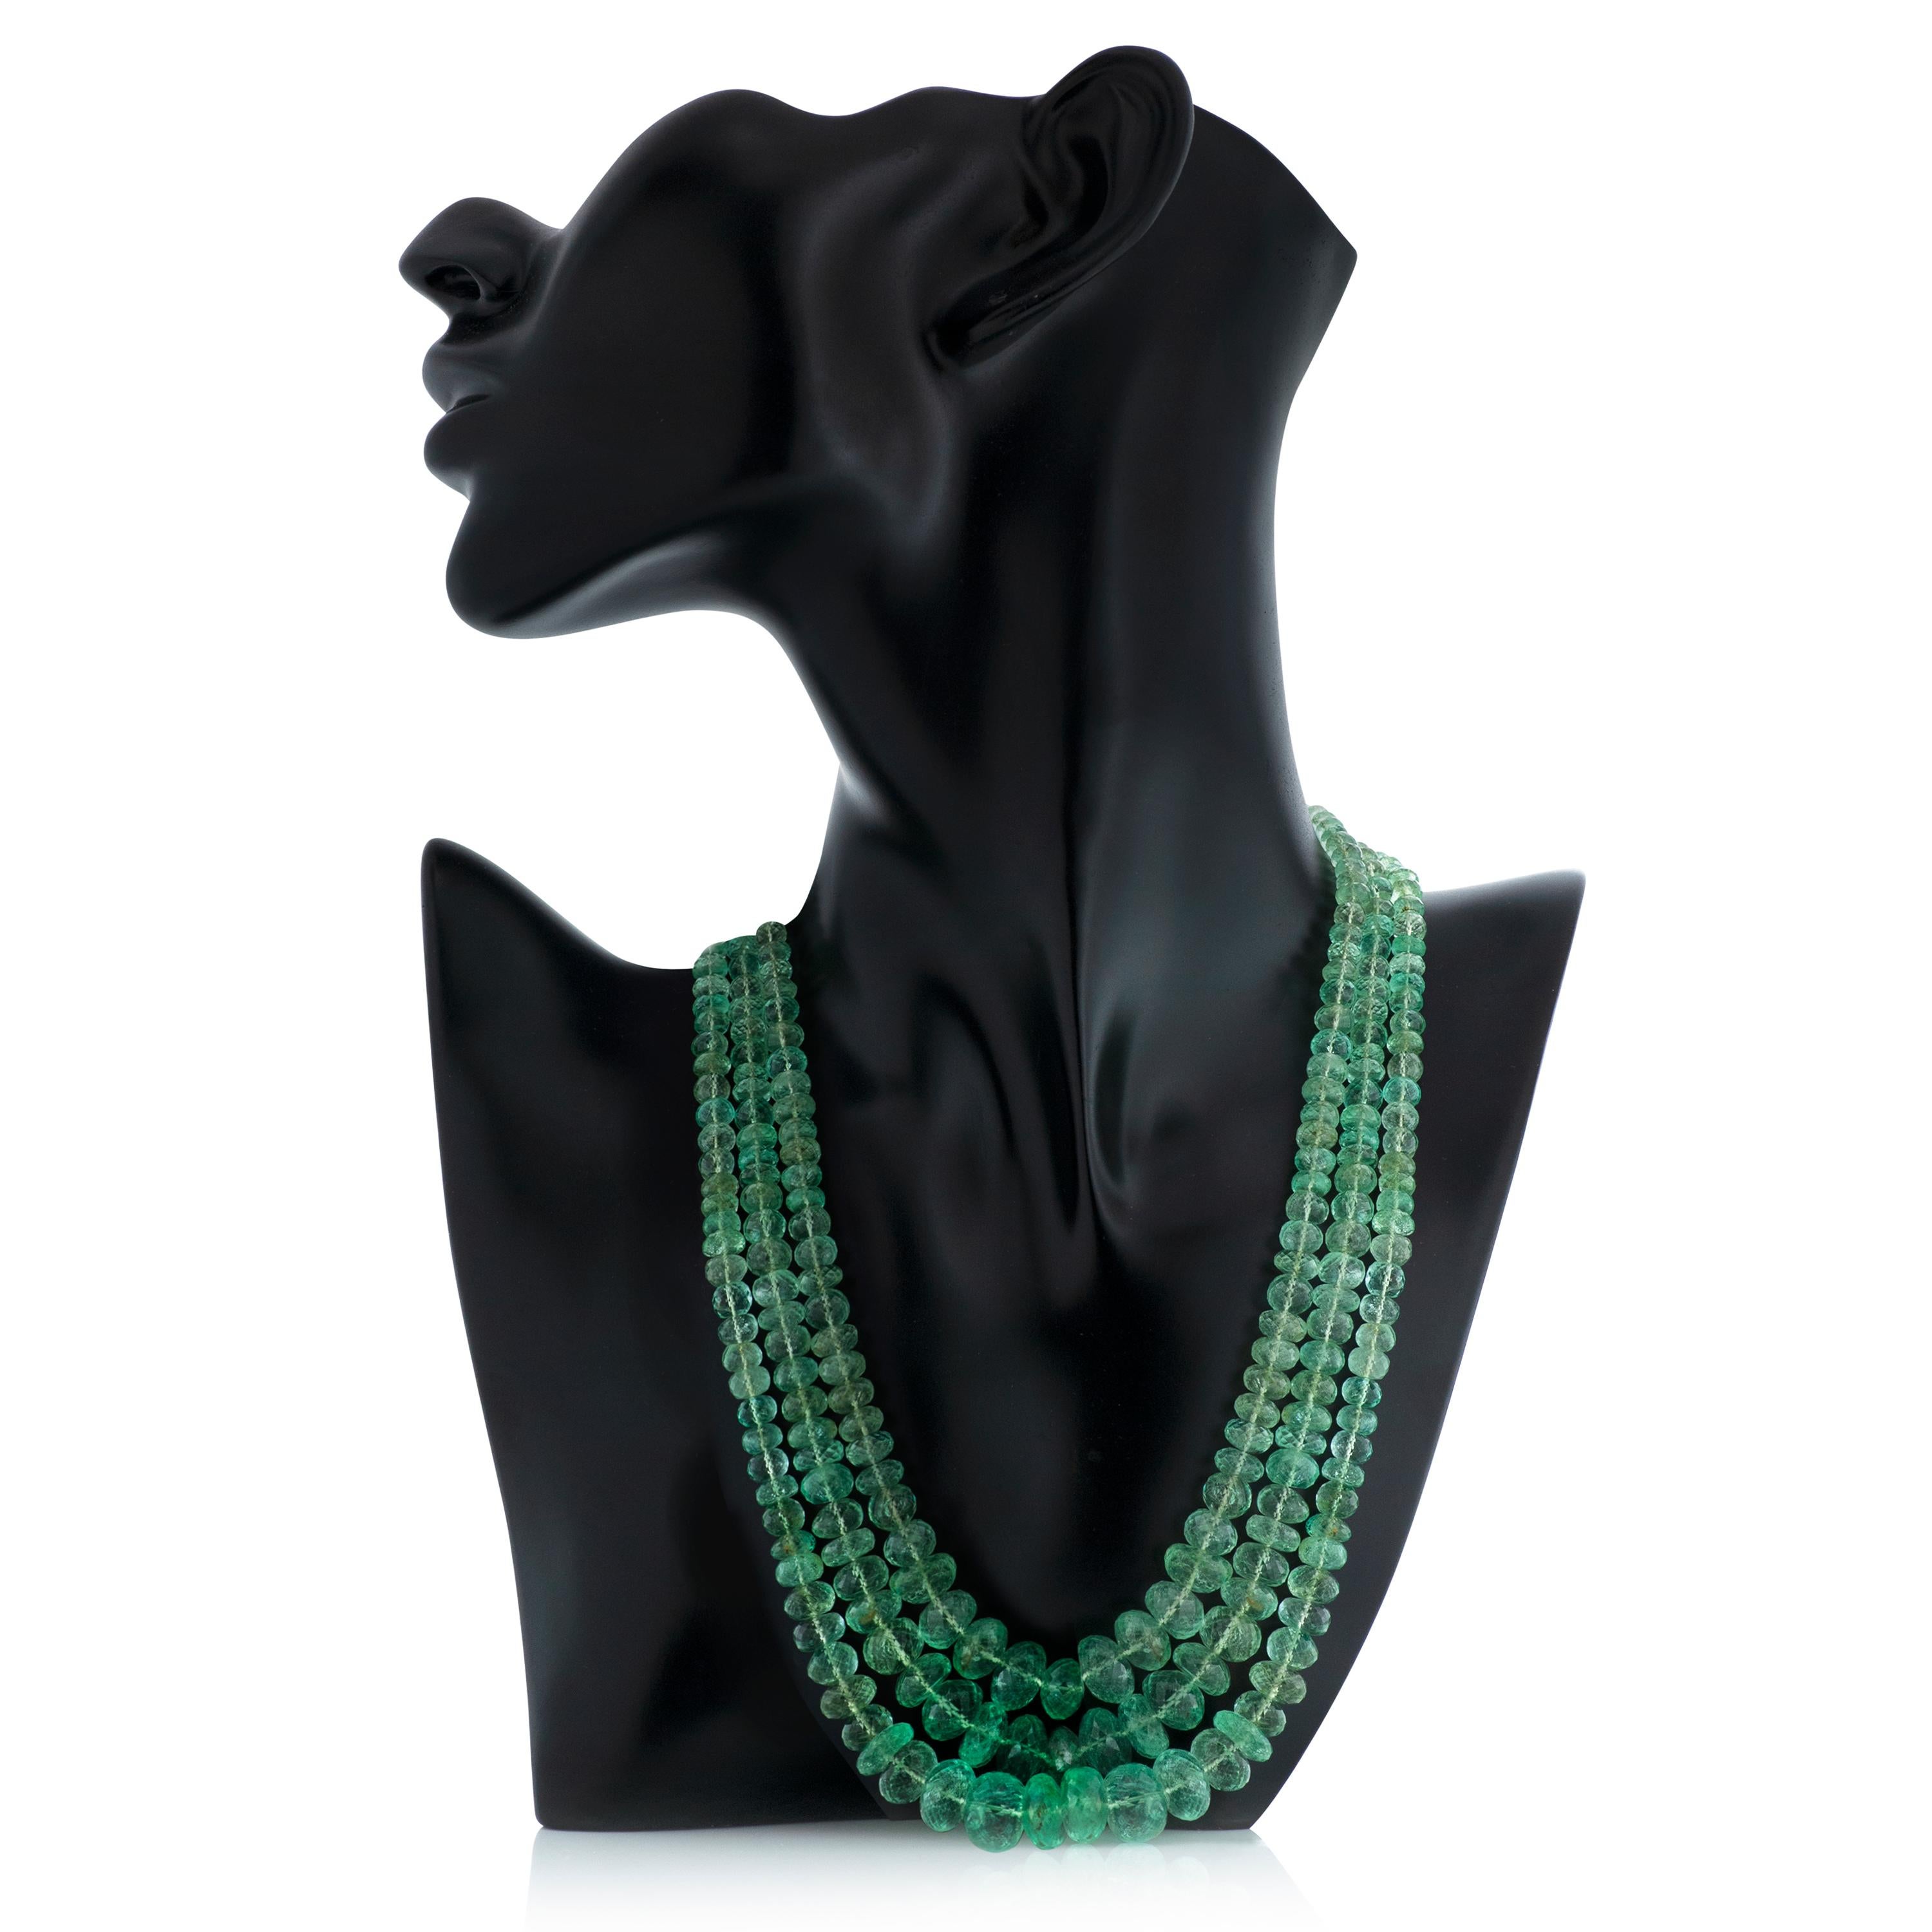 Vintage Seaman Schepps mehrsträngige facettierte grüne Beryll Perlenkette mit 18k Gelbgold und Diamant Verschluss.

Diese Halskette besteht aus 3 Strängen mit facettierten grünen Beryllperlen mit einer Größe von ca. 5 mm bis 12,5 mm.  Die Schließe